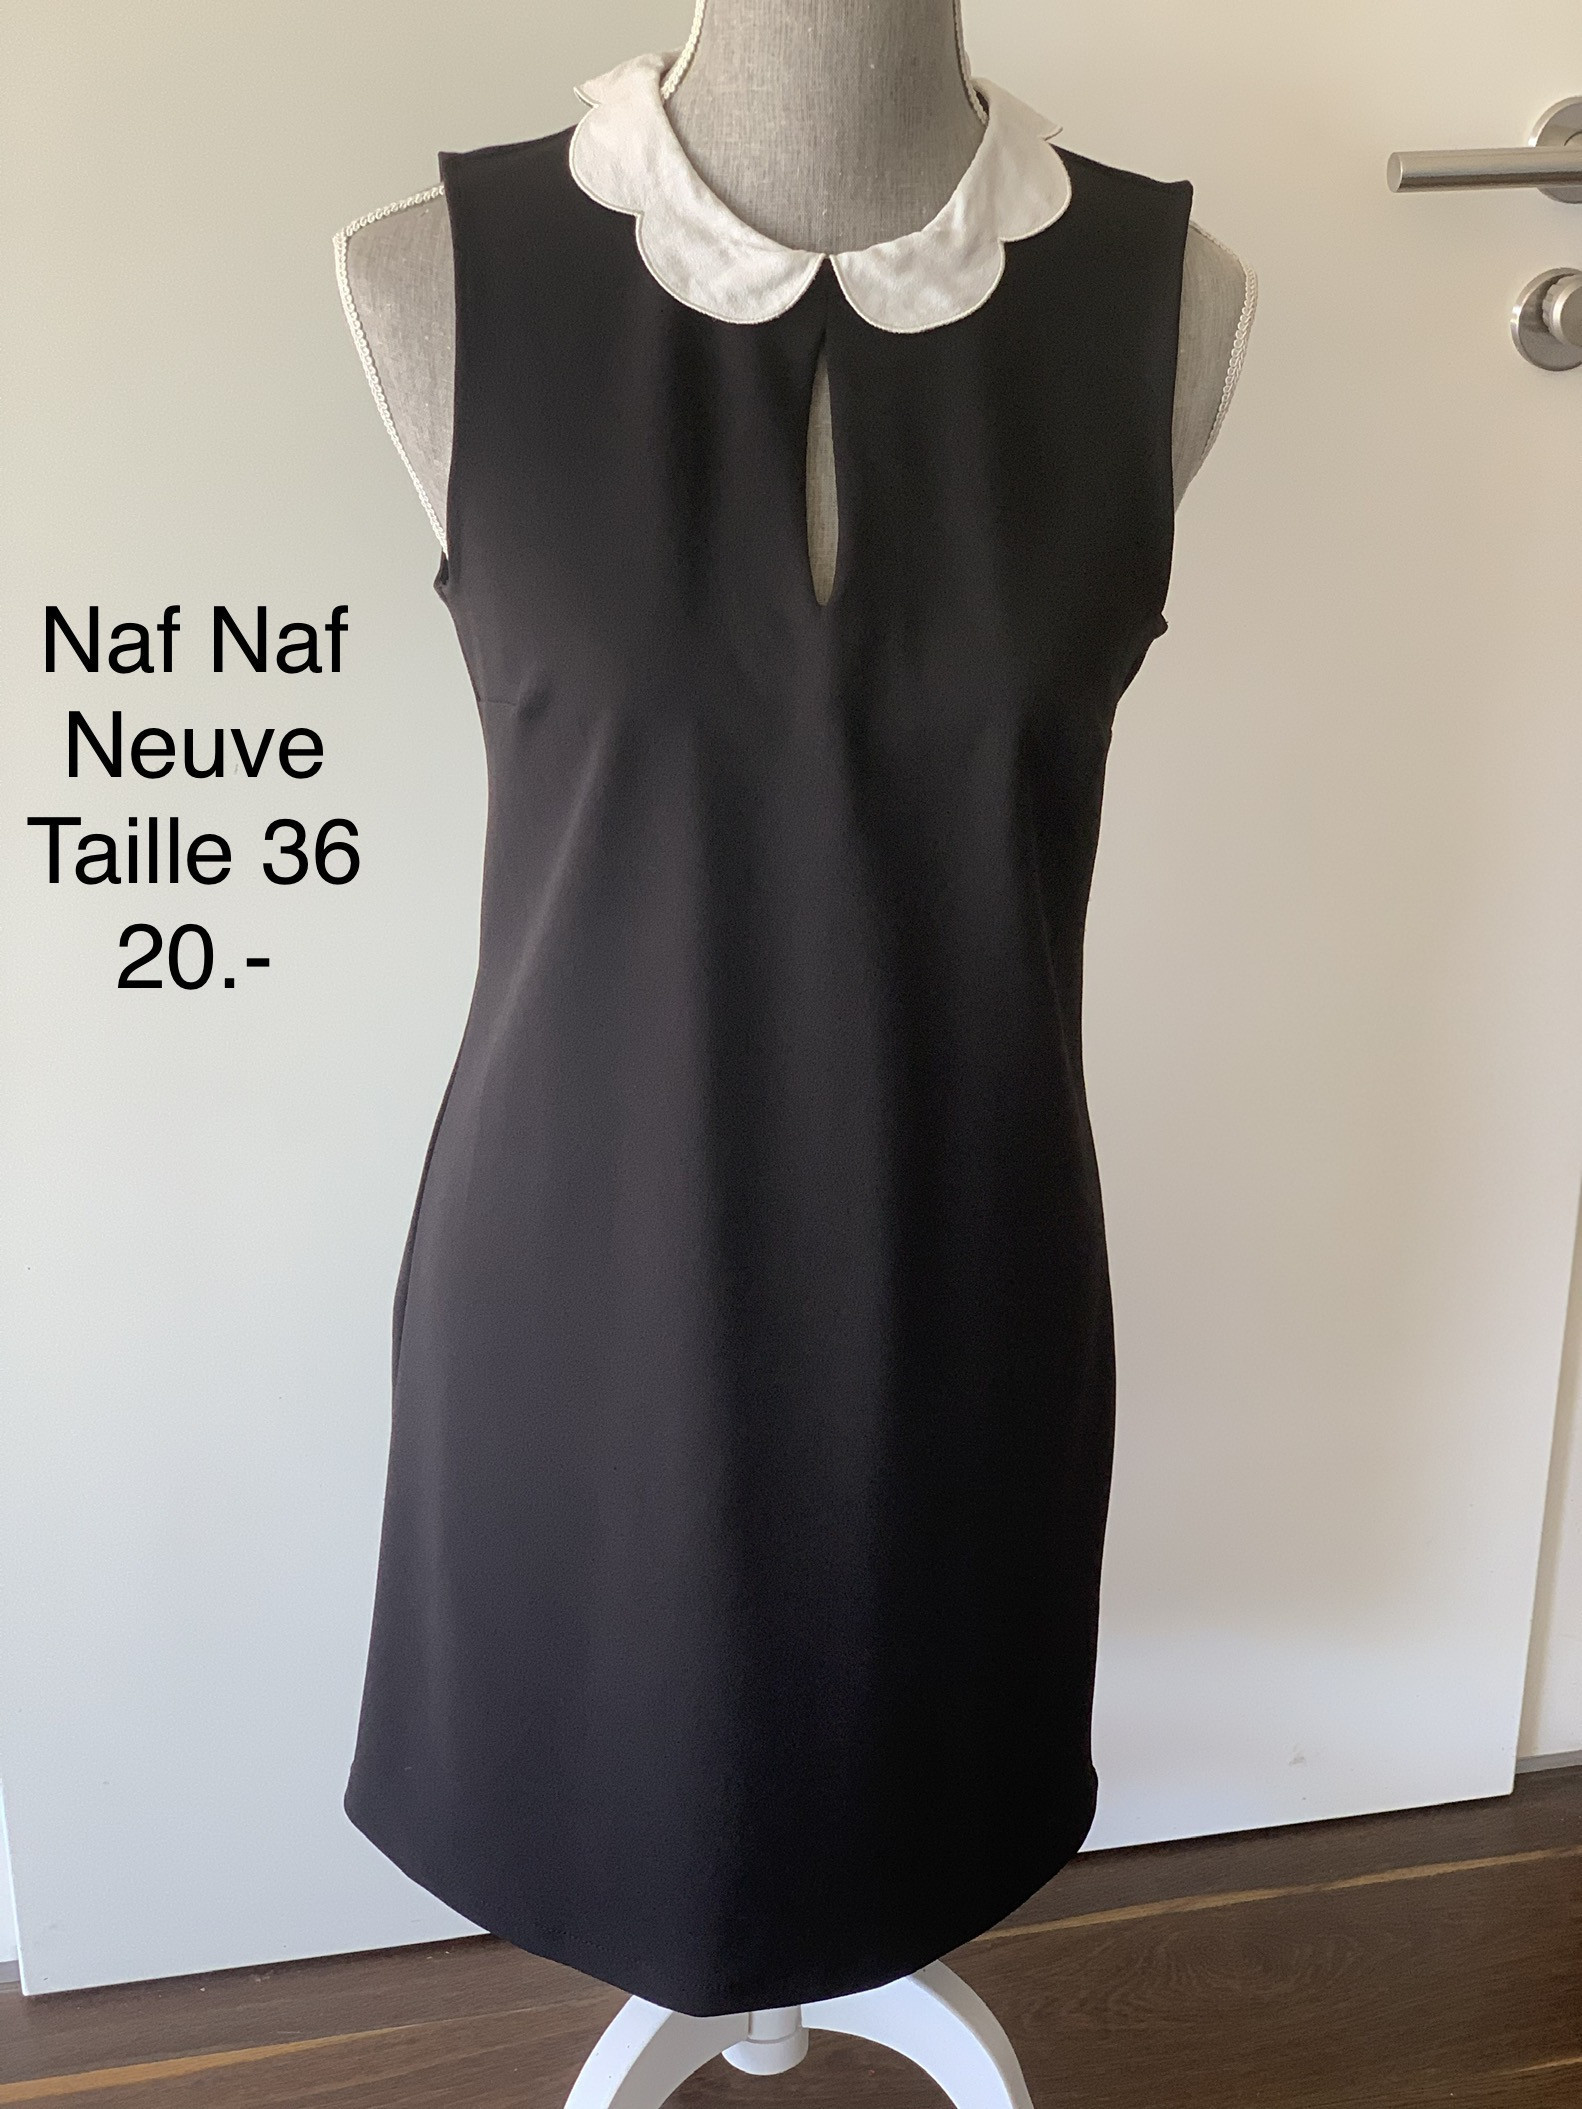 New Naf Naf dress in 36/38